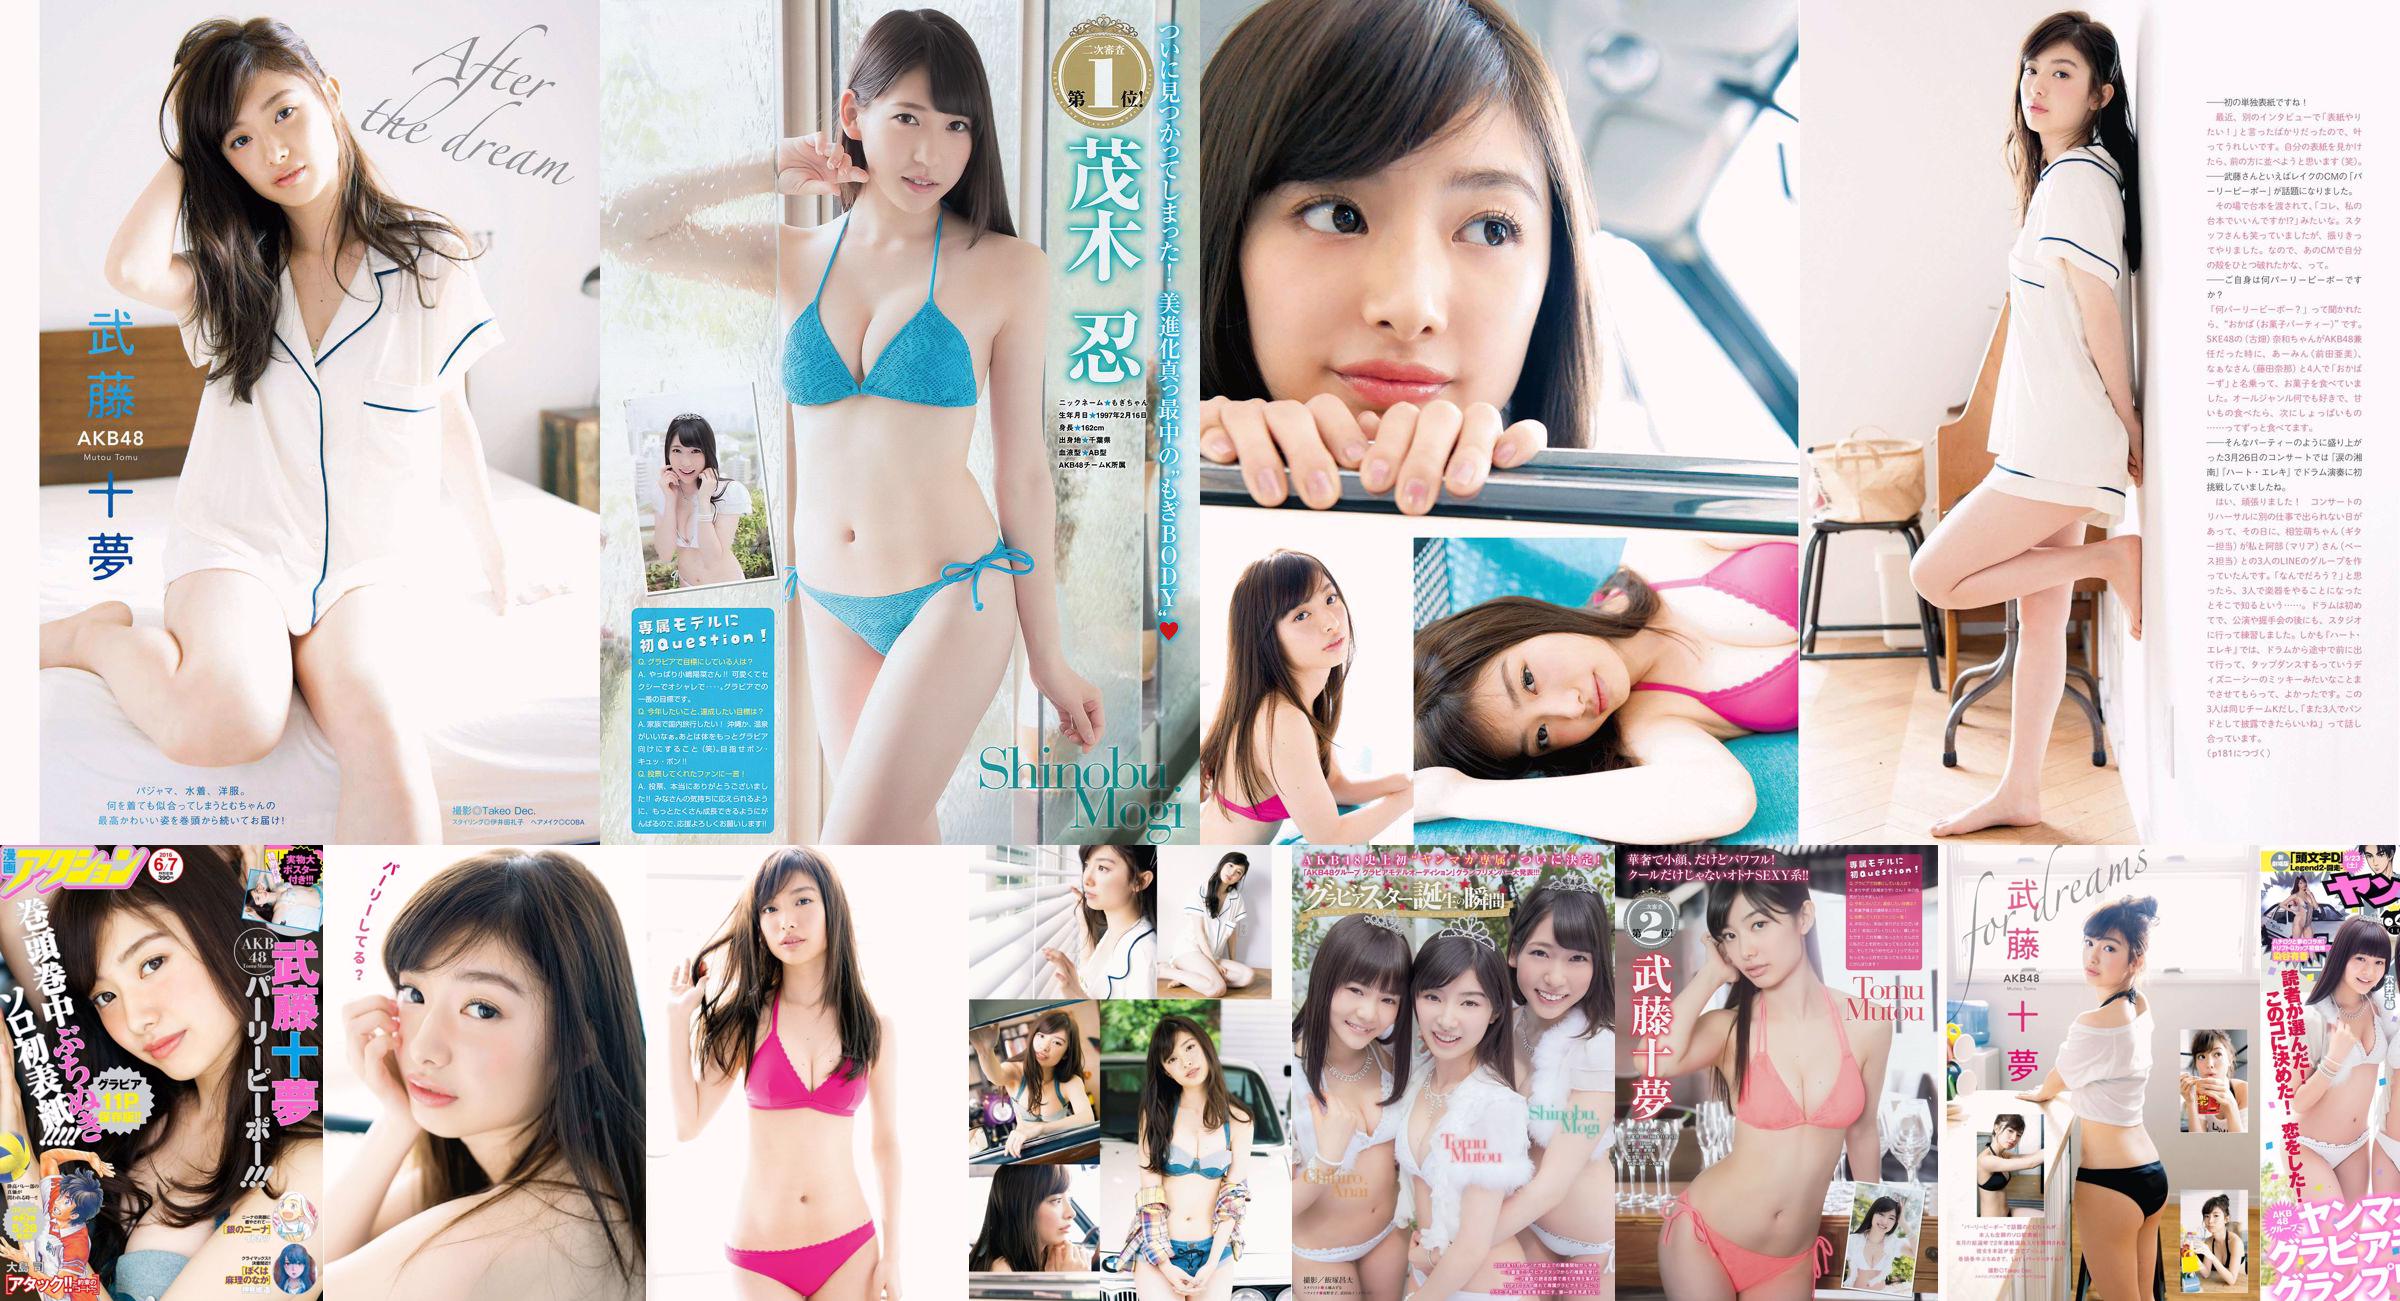 [Young Magazine] Tomu Muto Shinobu Mogi Chihiro Anai Erina Mano Yuka Someya 2015 No.25 Photograph No.18a880 หน้า 4